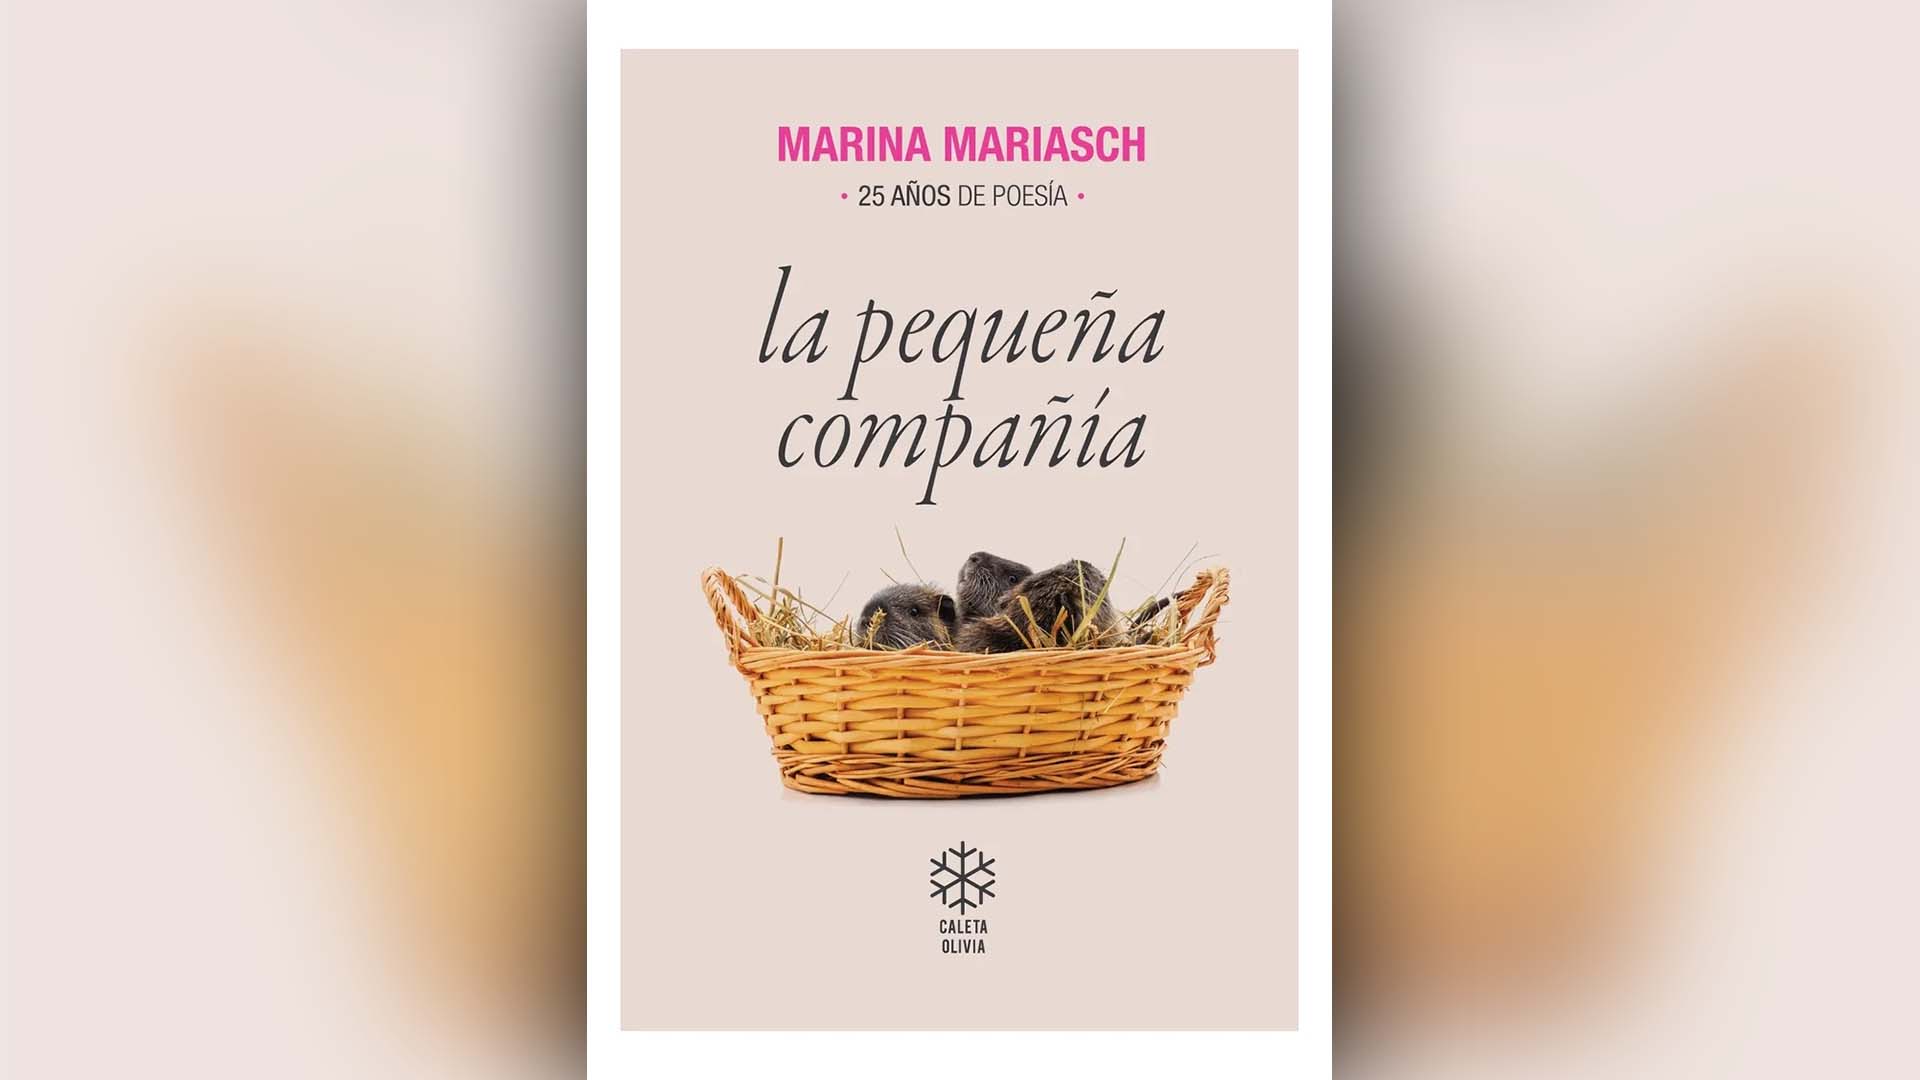 Marina Mariasch reunió la poesía que produjo en un cuarto de siglo.